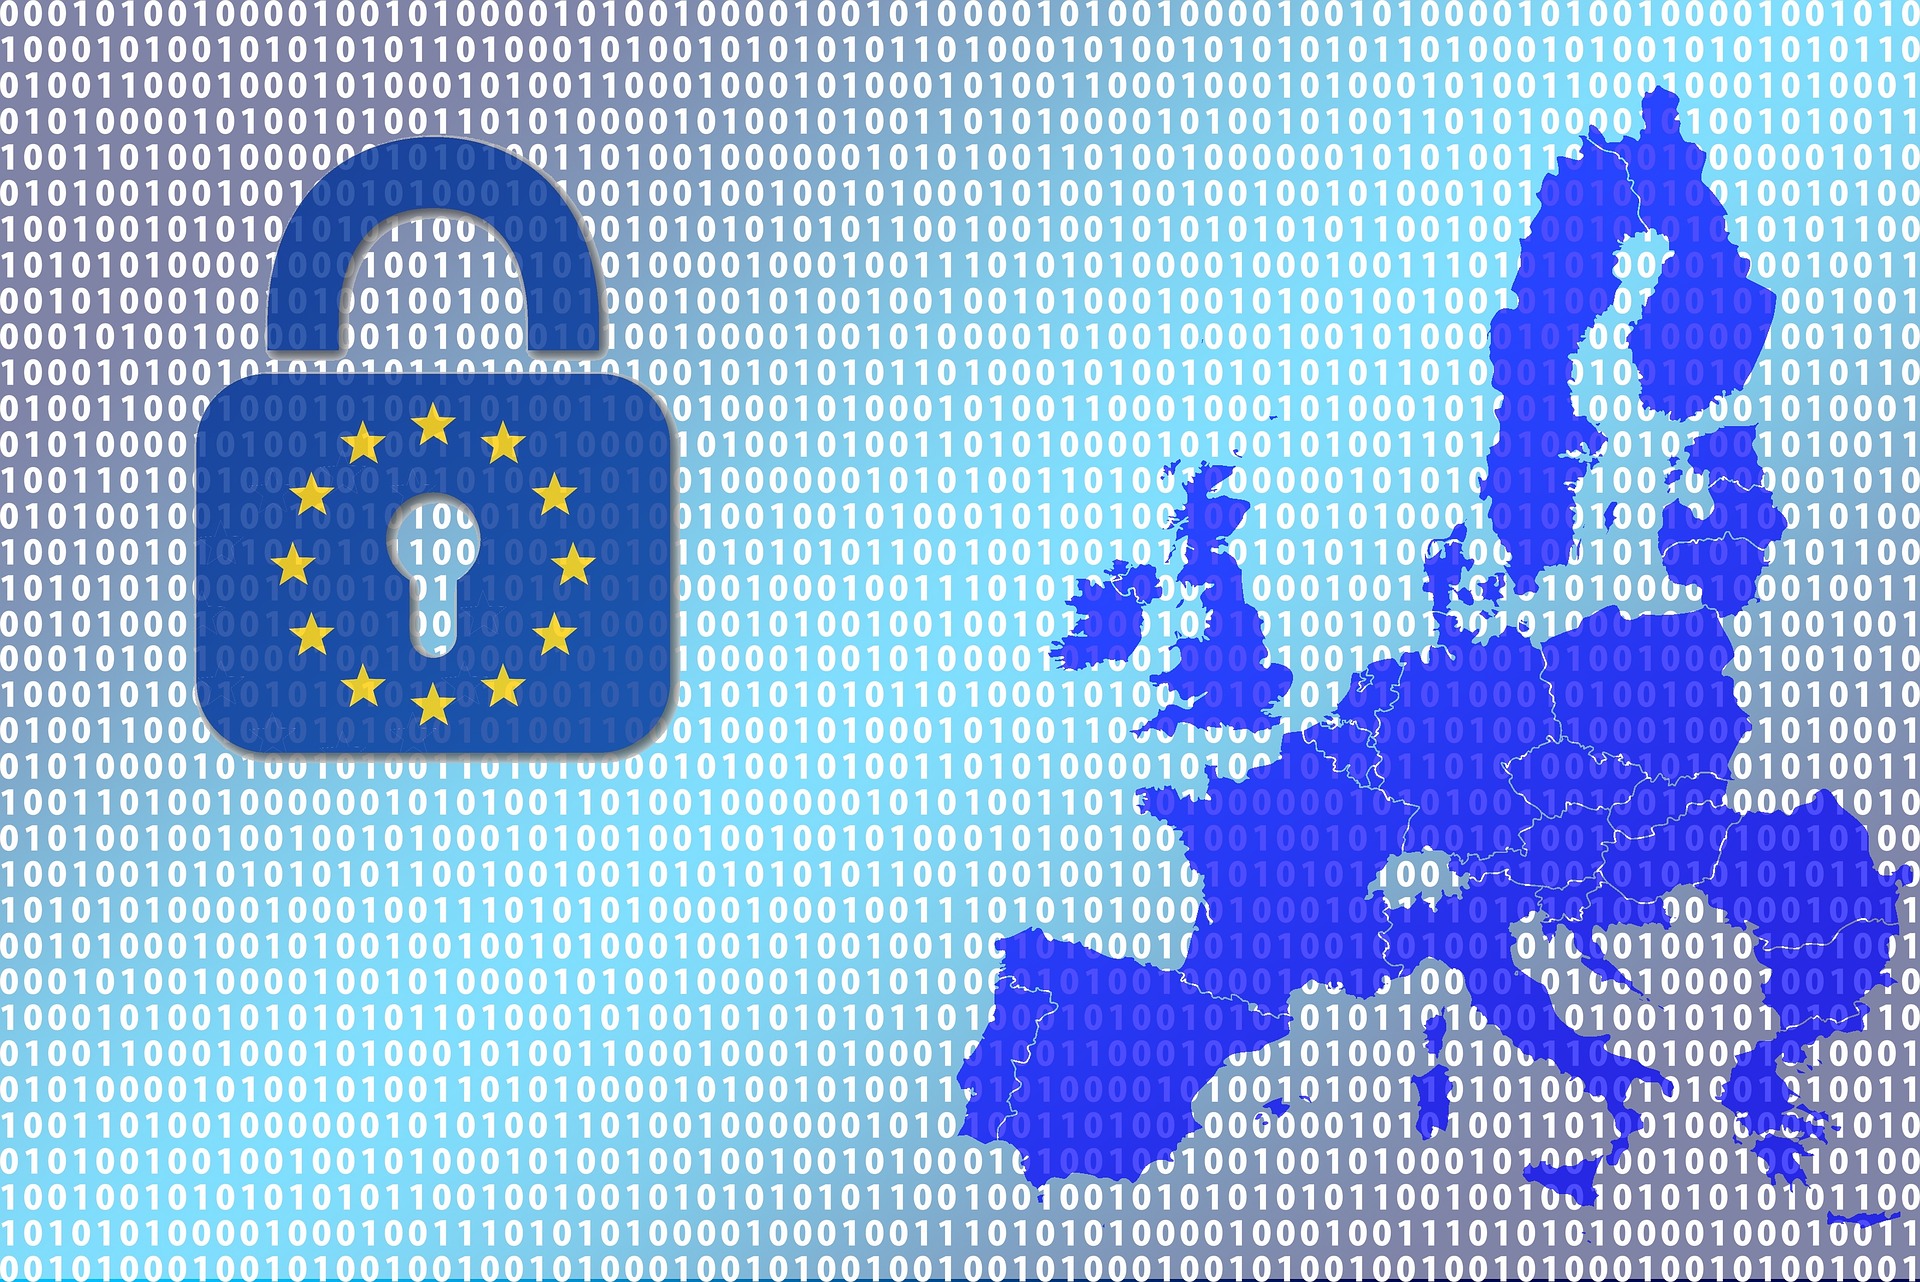 USA kommt der EU in Sachen Datenschutz entgegen